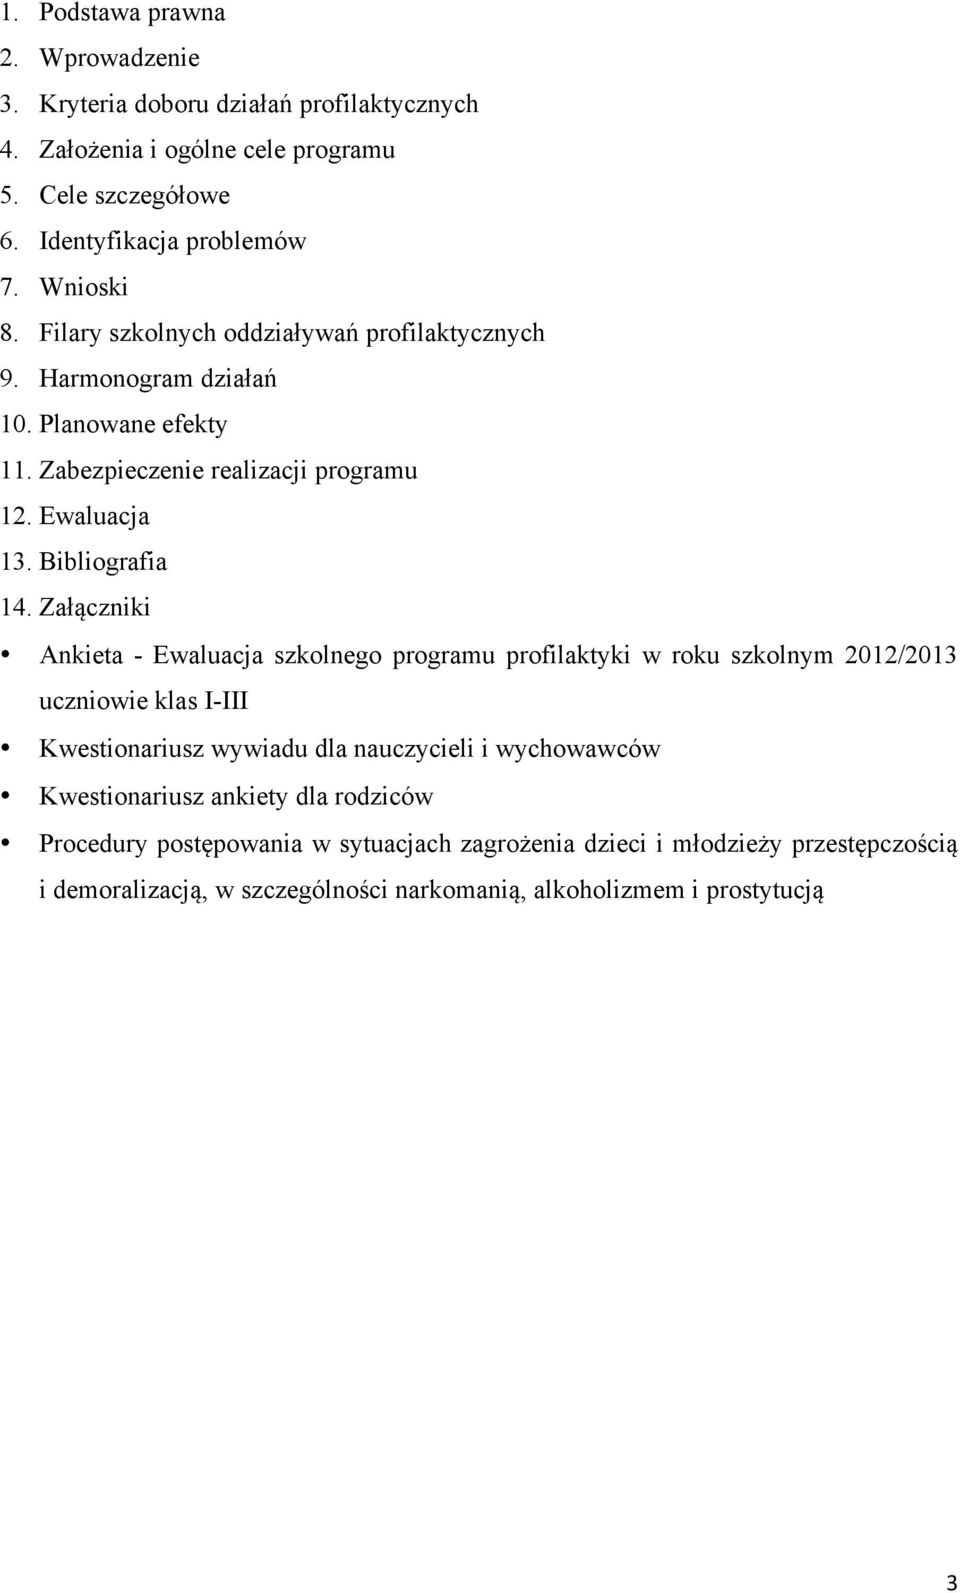 Załączniki Ankieta - Ewaluacja szkolnego programu profilaktyki w roku szkolnym 2012/2013 uczniowie klas I-III Kwestionariusz wywiadu dla nauczycieli i wychowawców